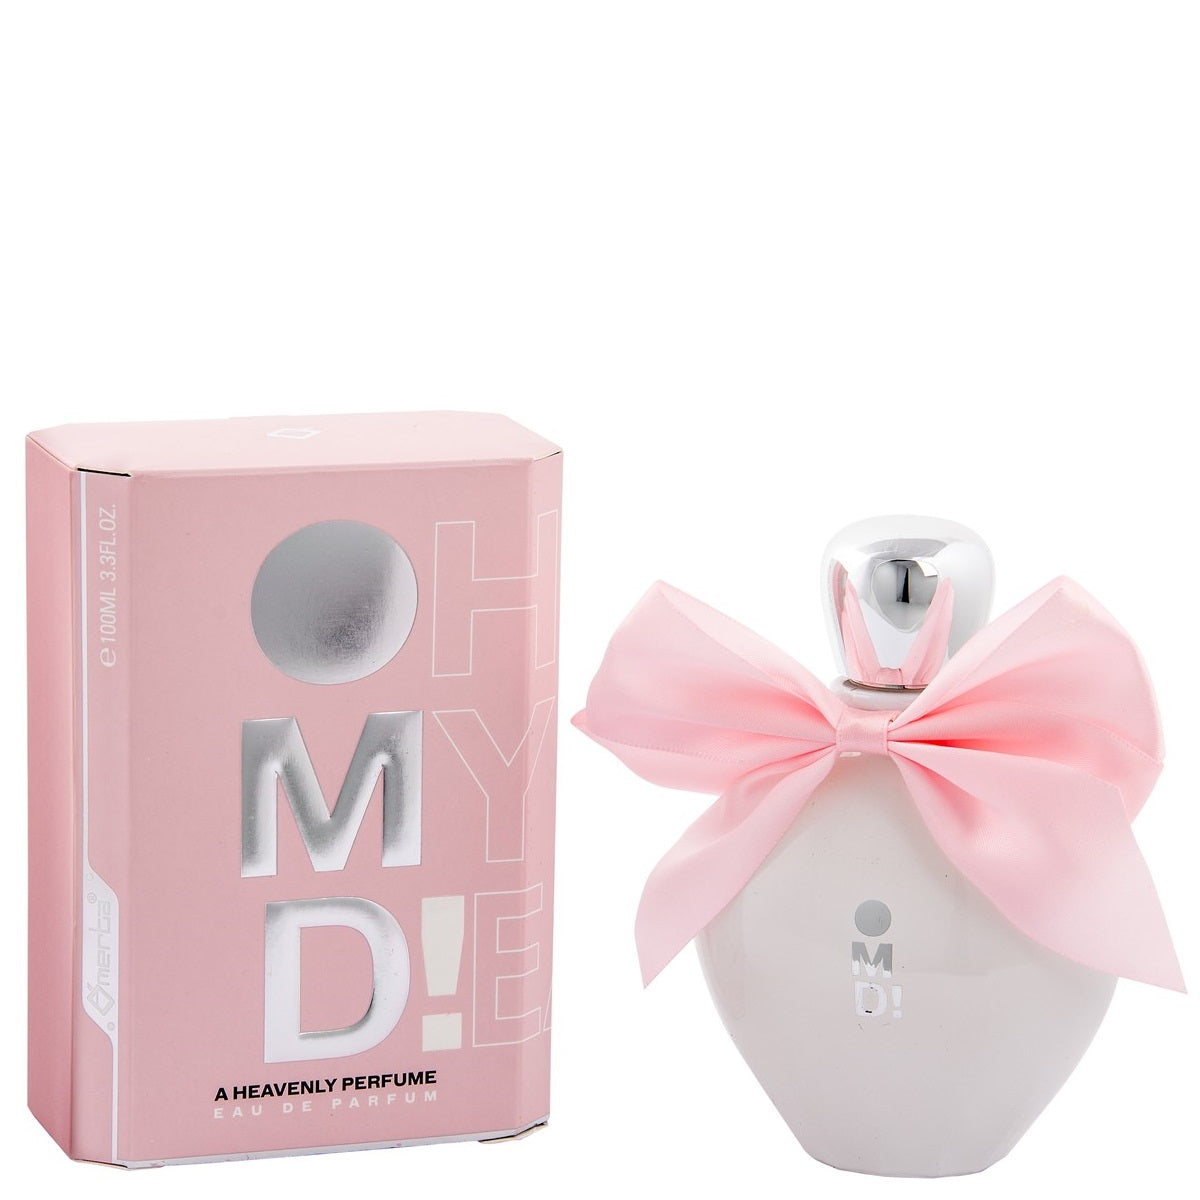 100 ml Eau de Perfume "OMD" Fruity Amebery Fragancia floral para mujer, con contenido de aceite de fragancia 6%